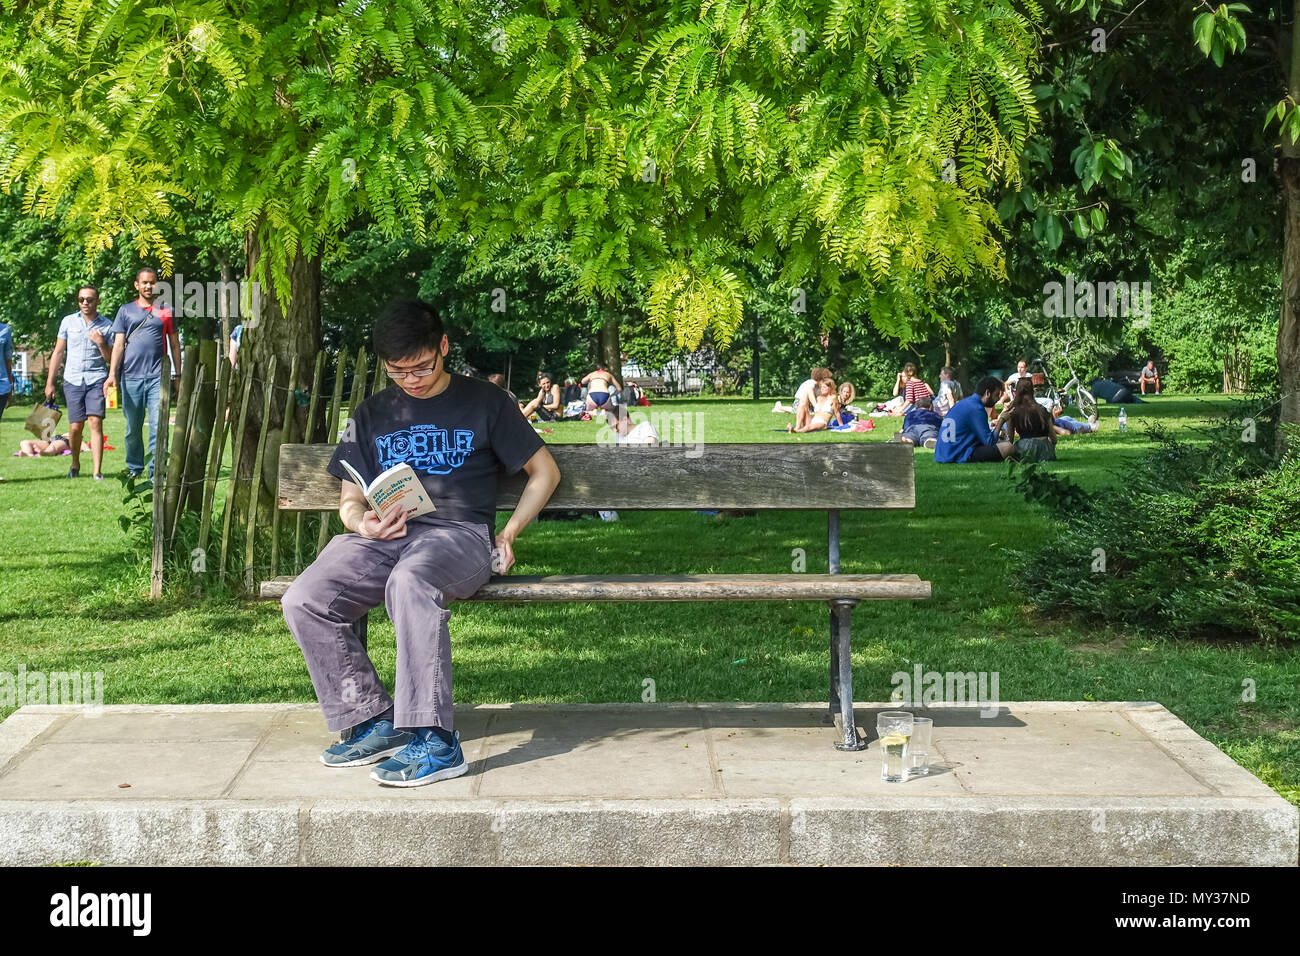 Un jeune mâle adulte est assis sur un banc de parc en lisant un livre sur une chaude journée ensoleillée, dans les jardins, Furnival Hammersmith, Londres. Banque D'Images